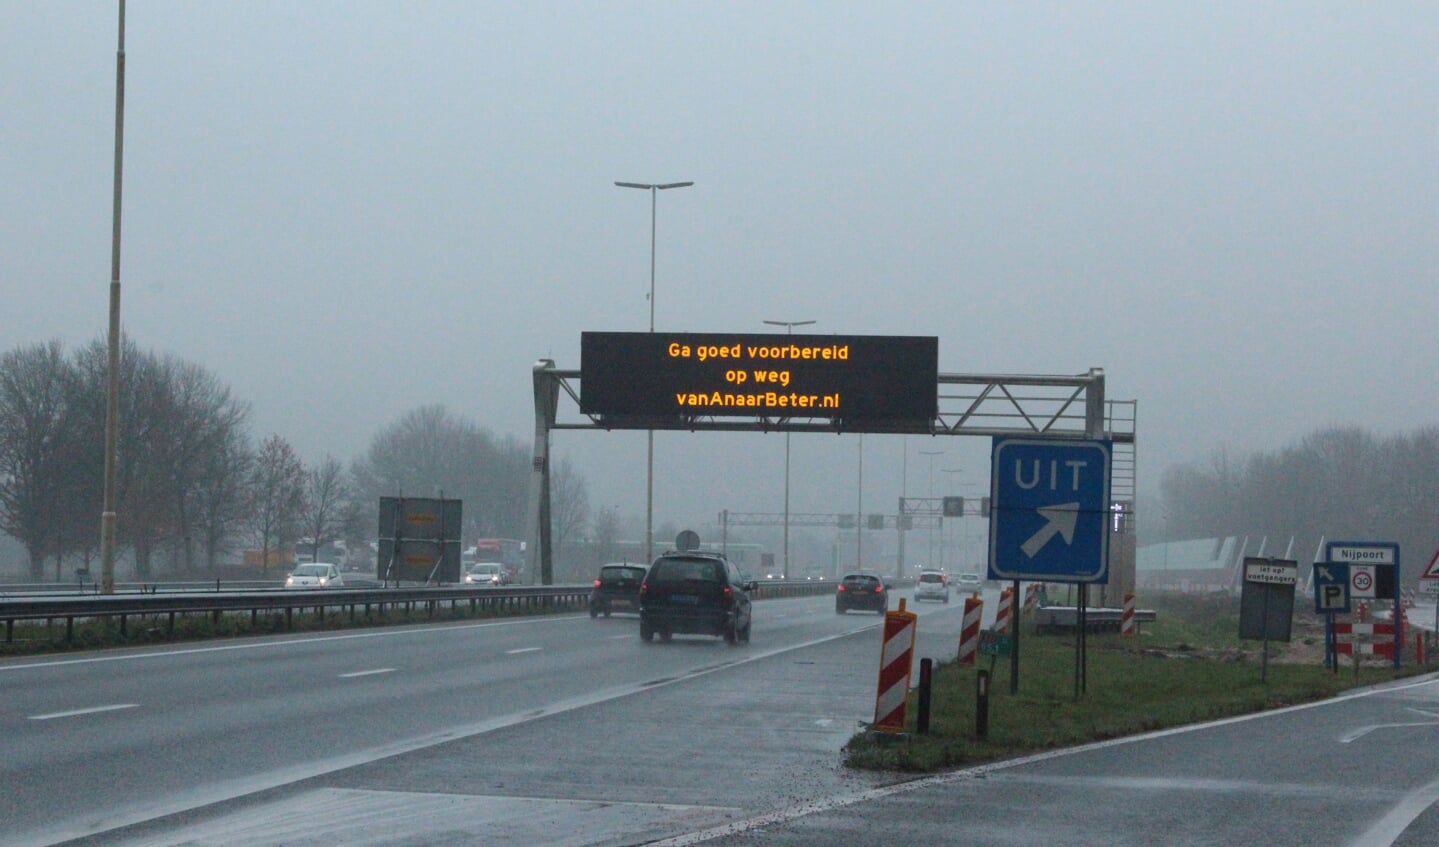 Dit bord (Ga goed voorbereid op weg van Anaarbeter.nl) overspant ook de weg wanneer deze is afgesloten.